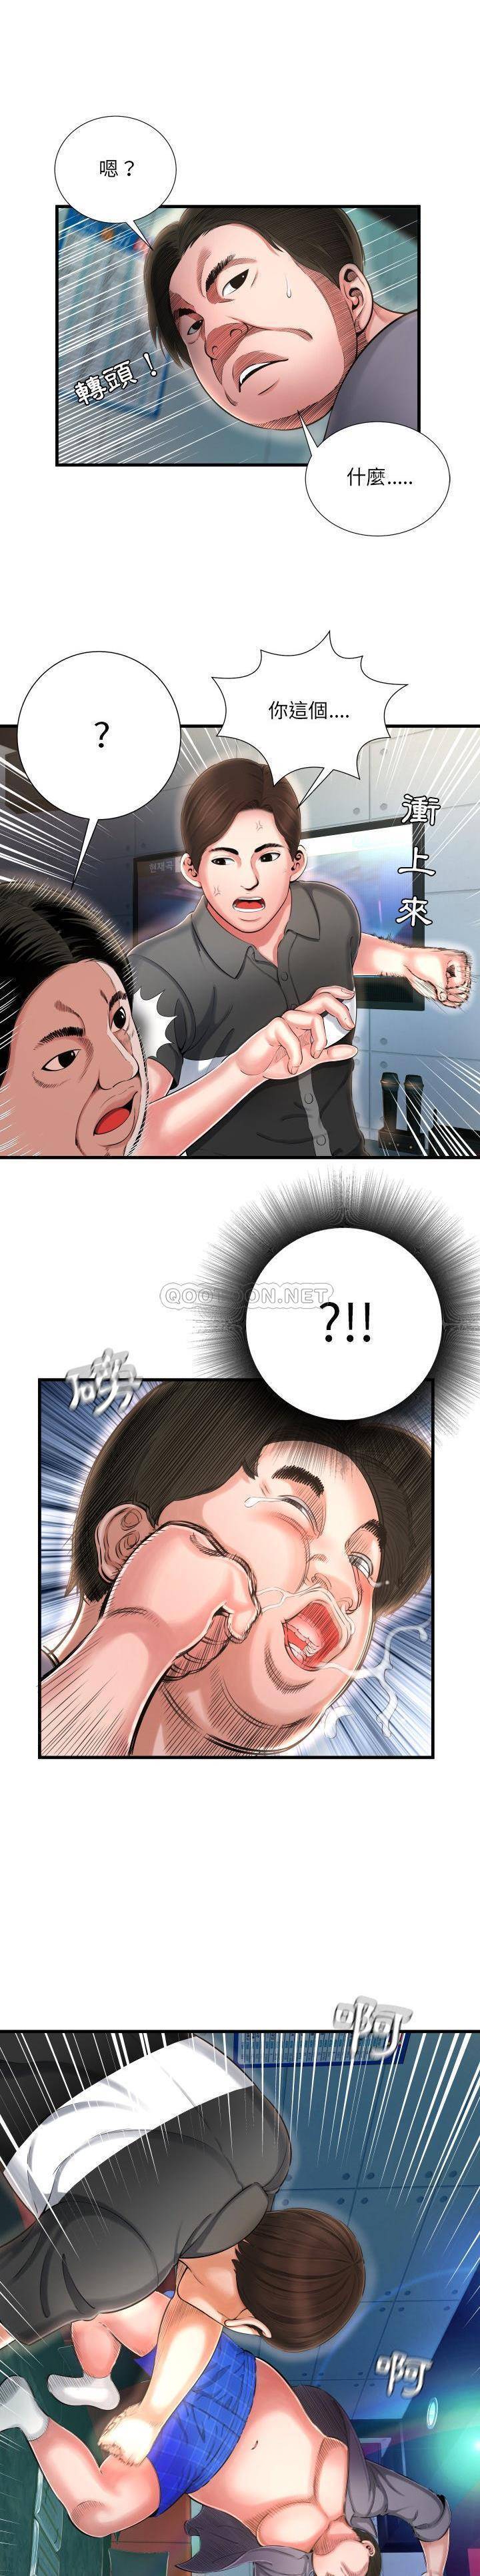 韩国污漫画 深淵 第7话 5